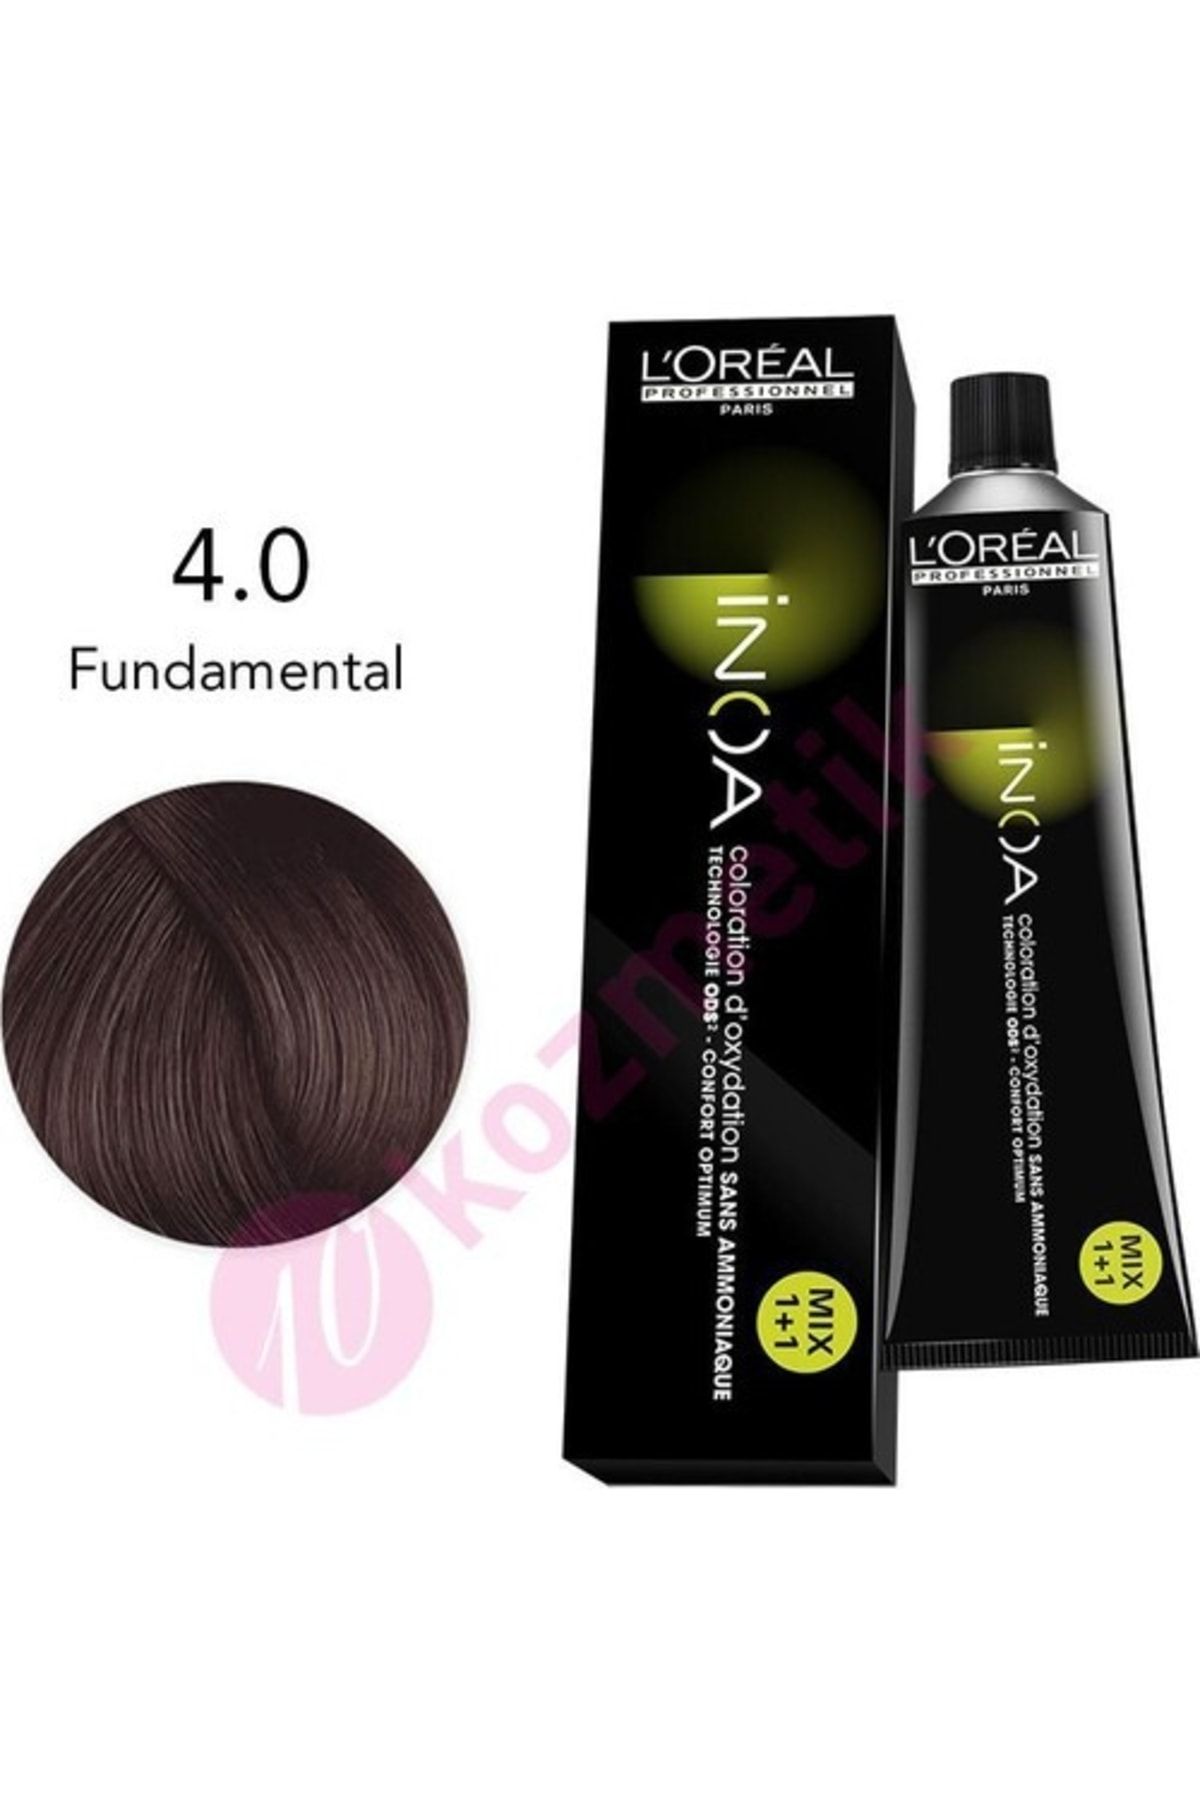 İNOA Loreal Amonyaksız Saç Boyası No: 4.0 Fundamental 60ml.